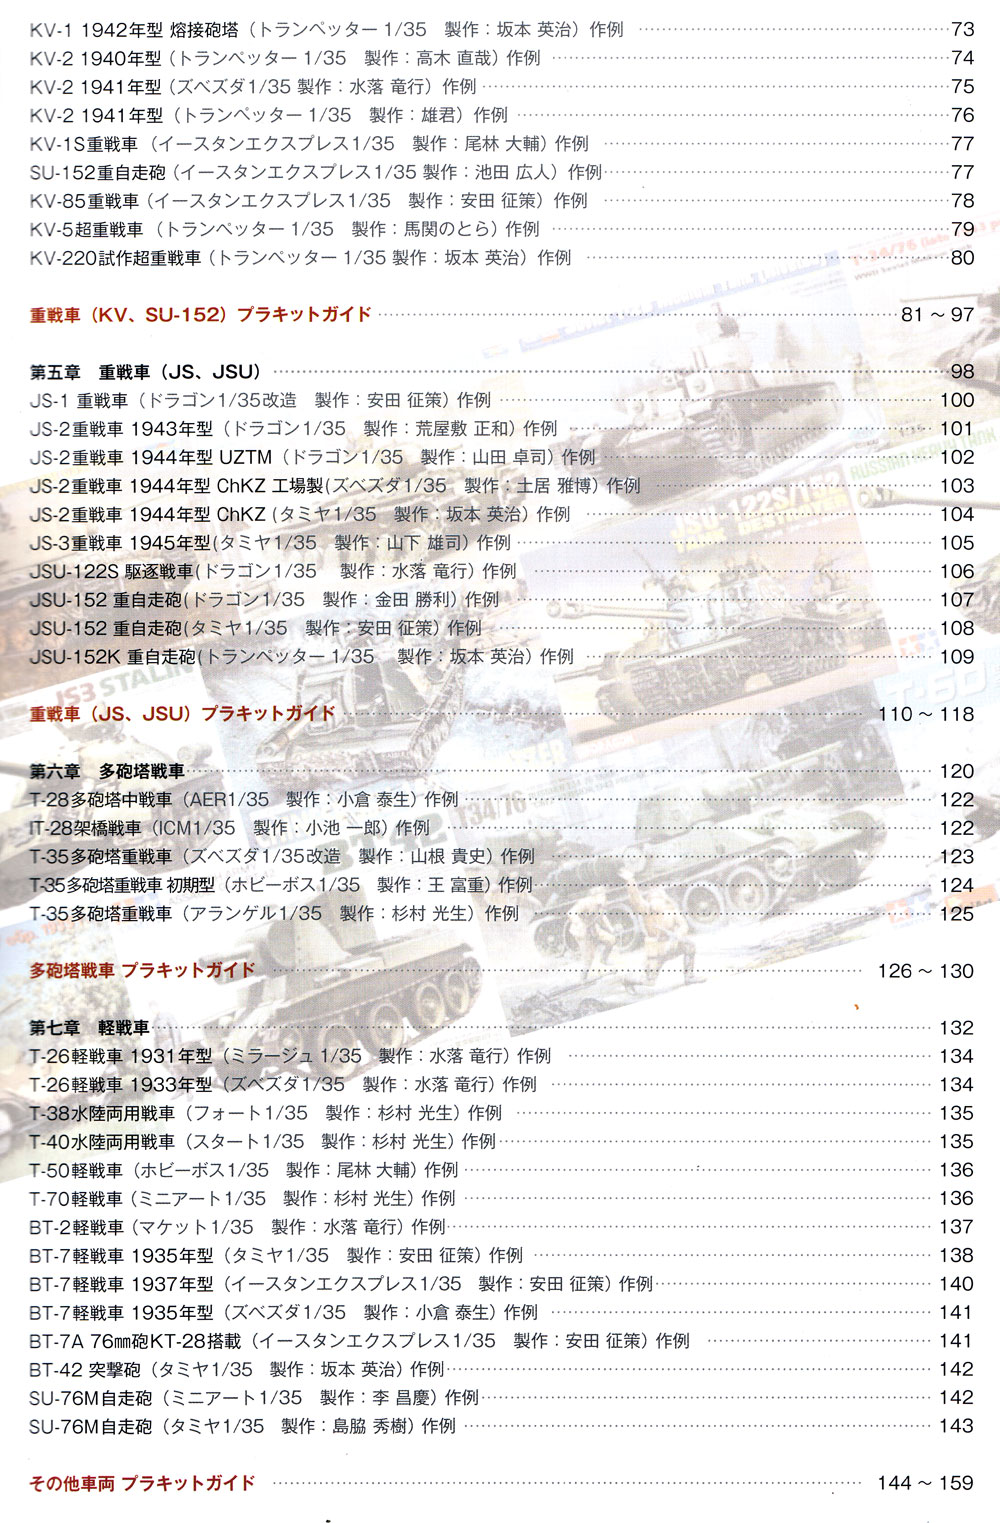 ロシア戦車データベース 1 WW2編 本 (モデルアート 臨時増刊 No.12320-10) 商品画像_2